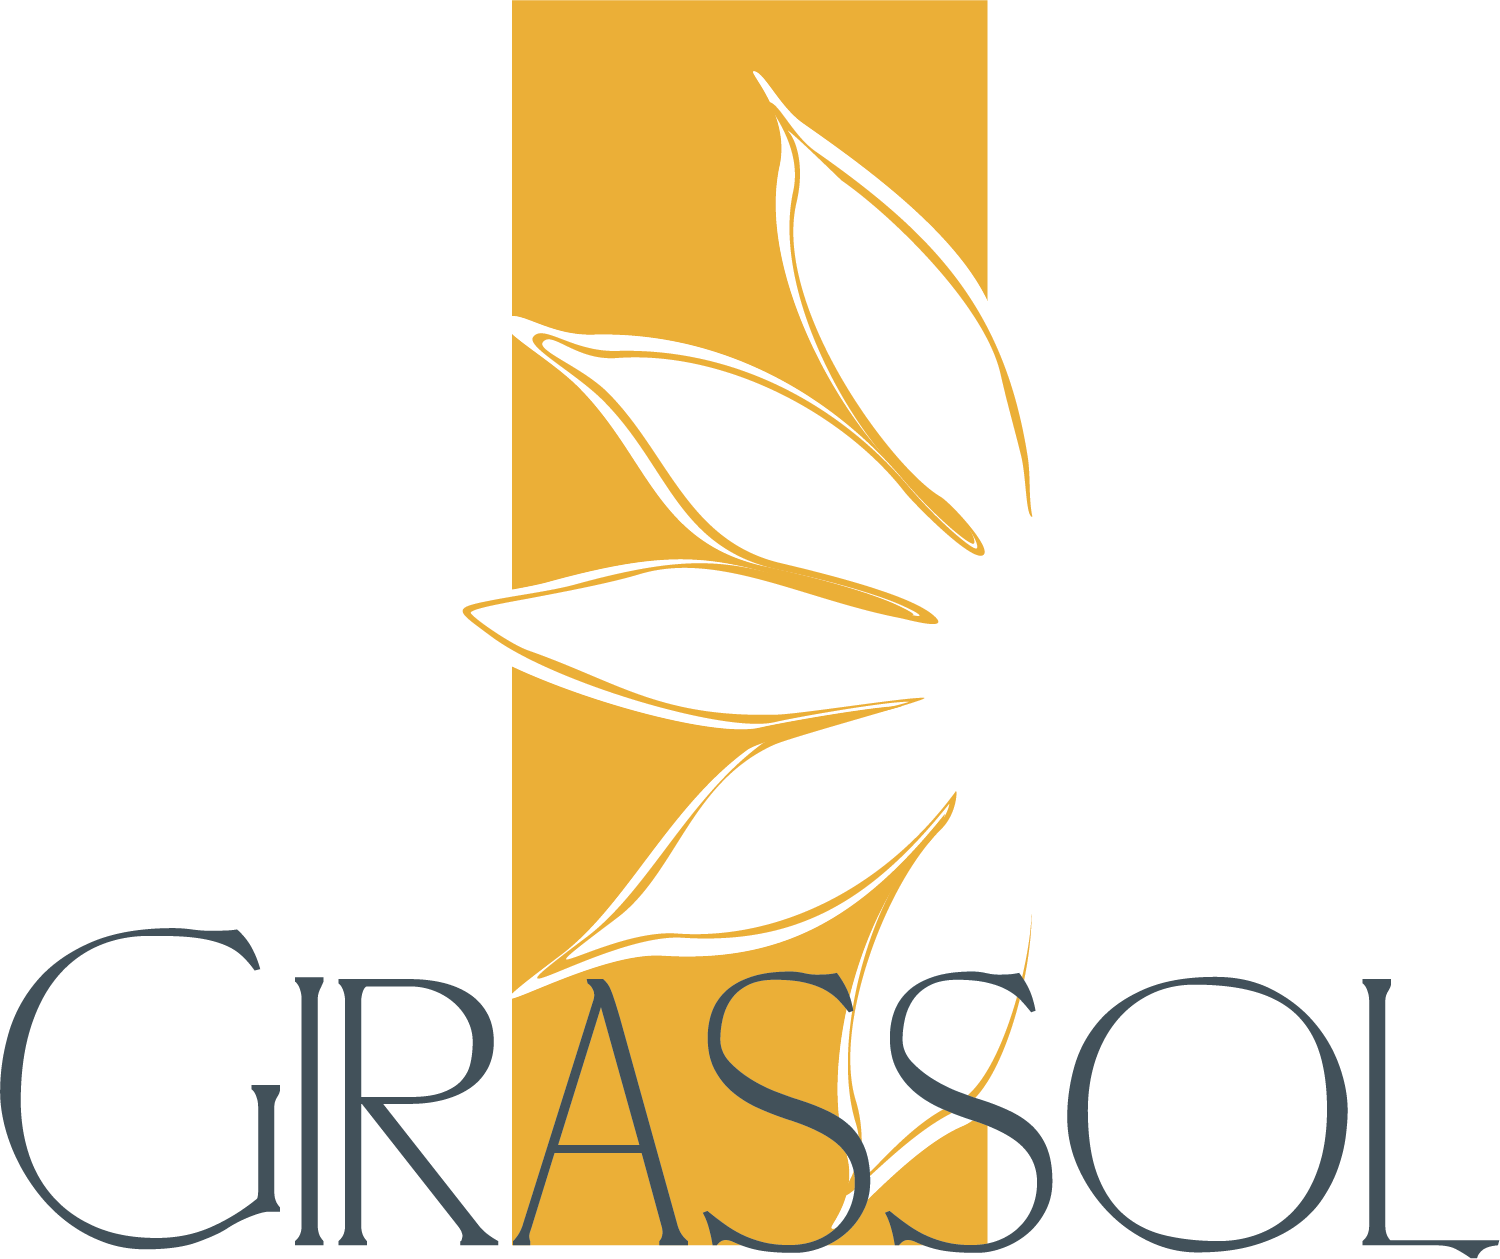 Restaurante Girassol